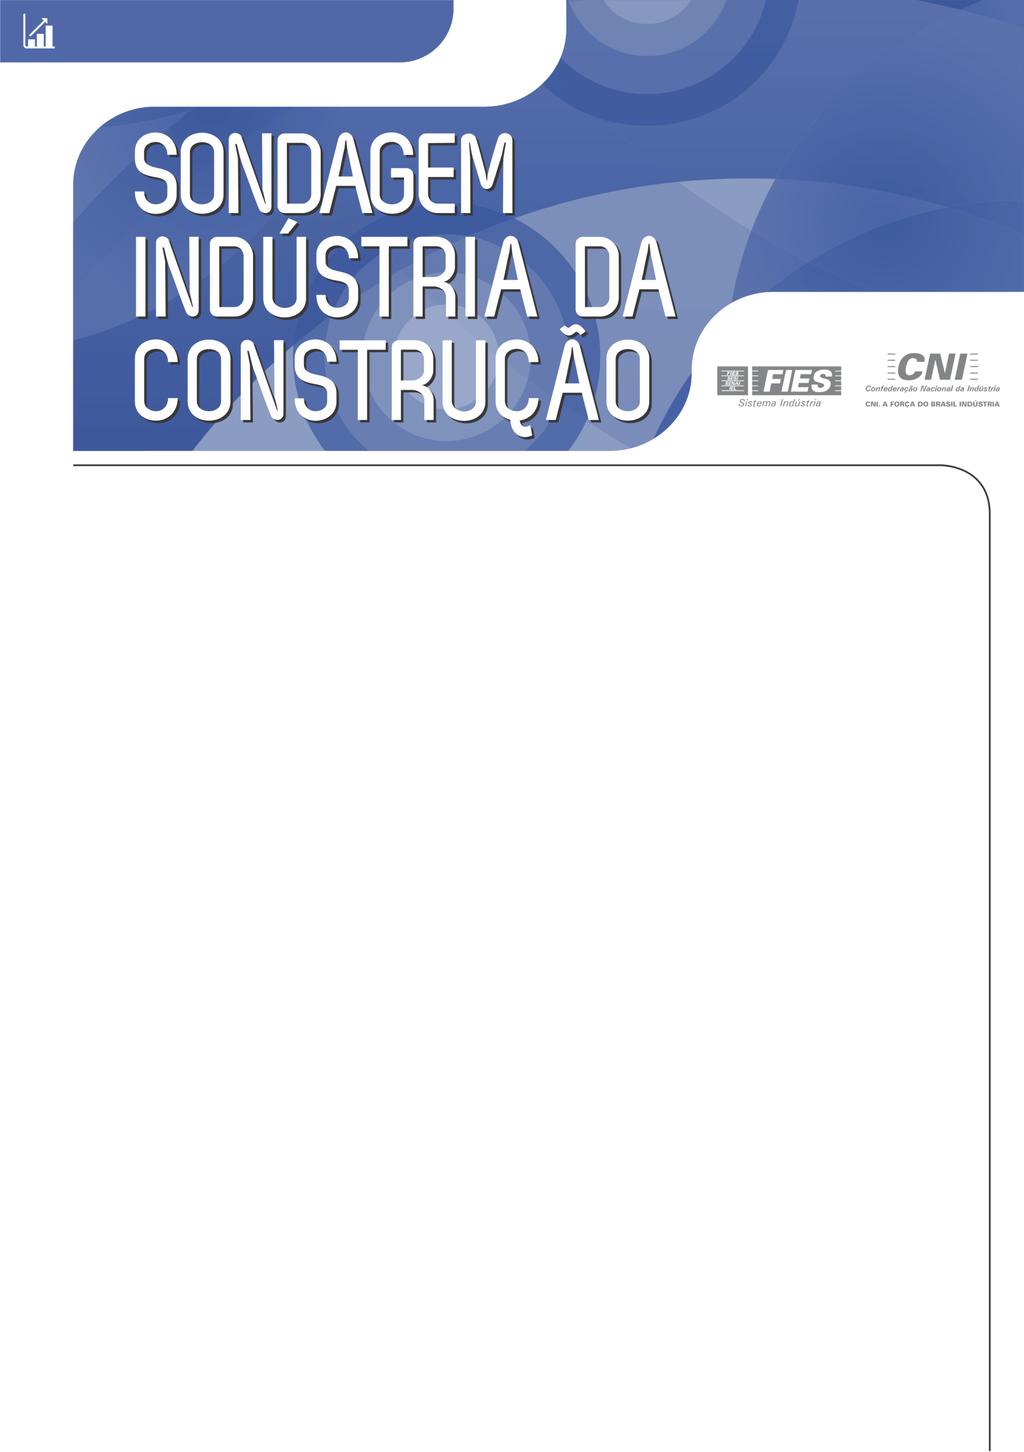 Sondagem Indústria da Construção em Sergipe Nível de Utilização da Capacidade de Operação permanece alto Criada pela Confederação Nacional da Indústria (CNI) com o objetivo de acompanhar a evolução